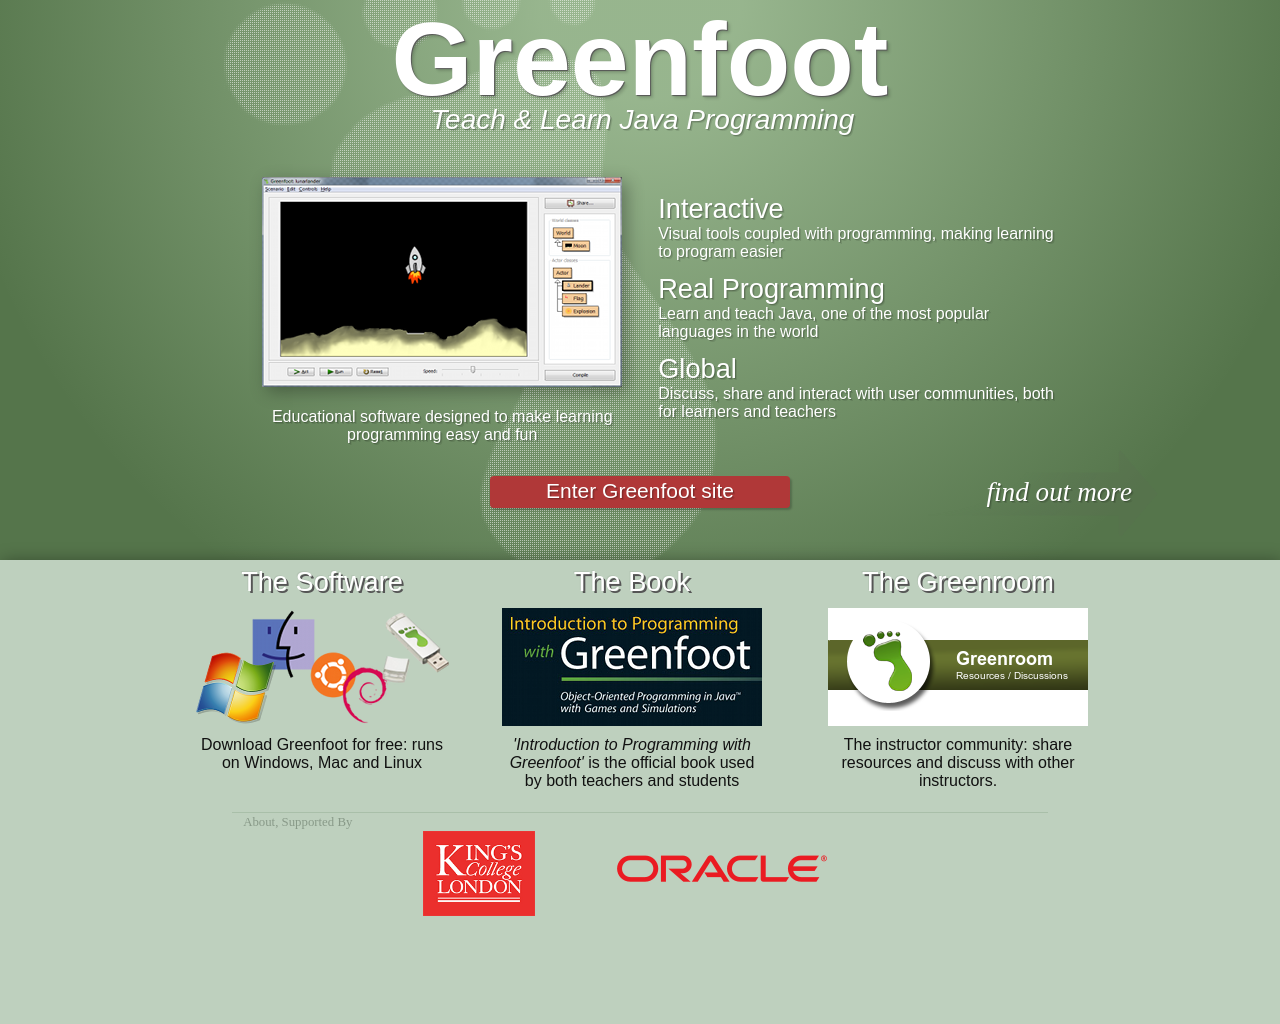 greenfoot.org